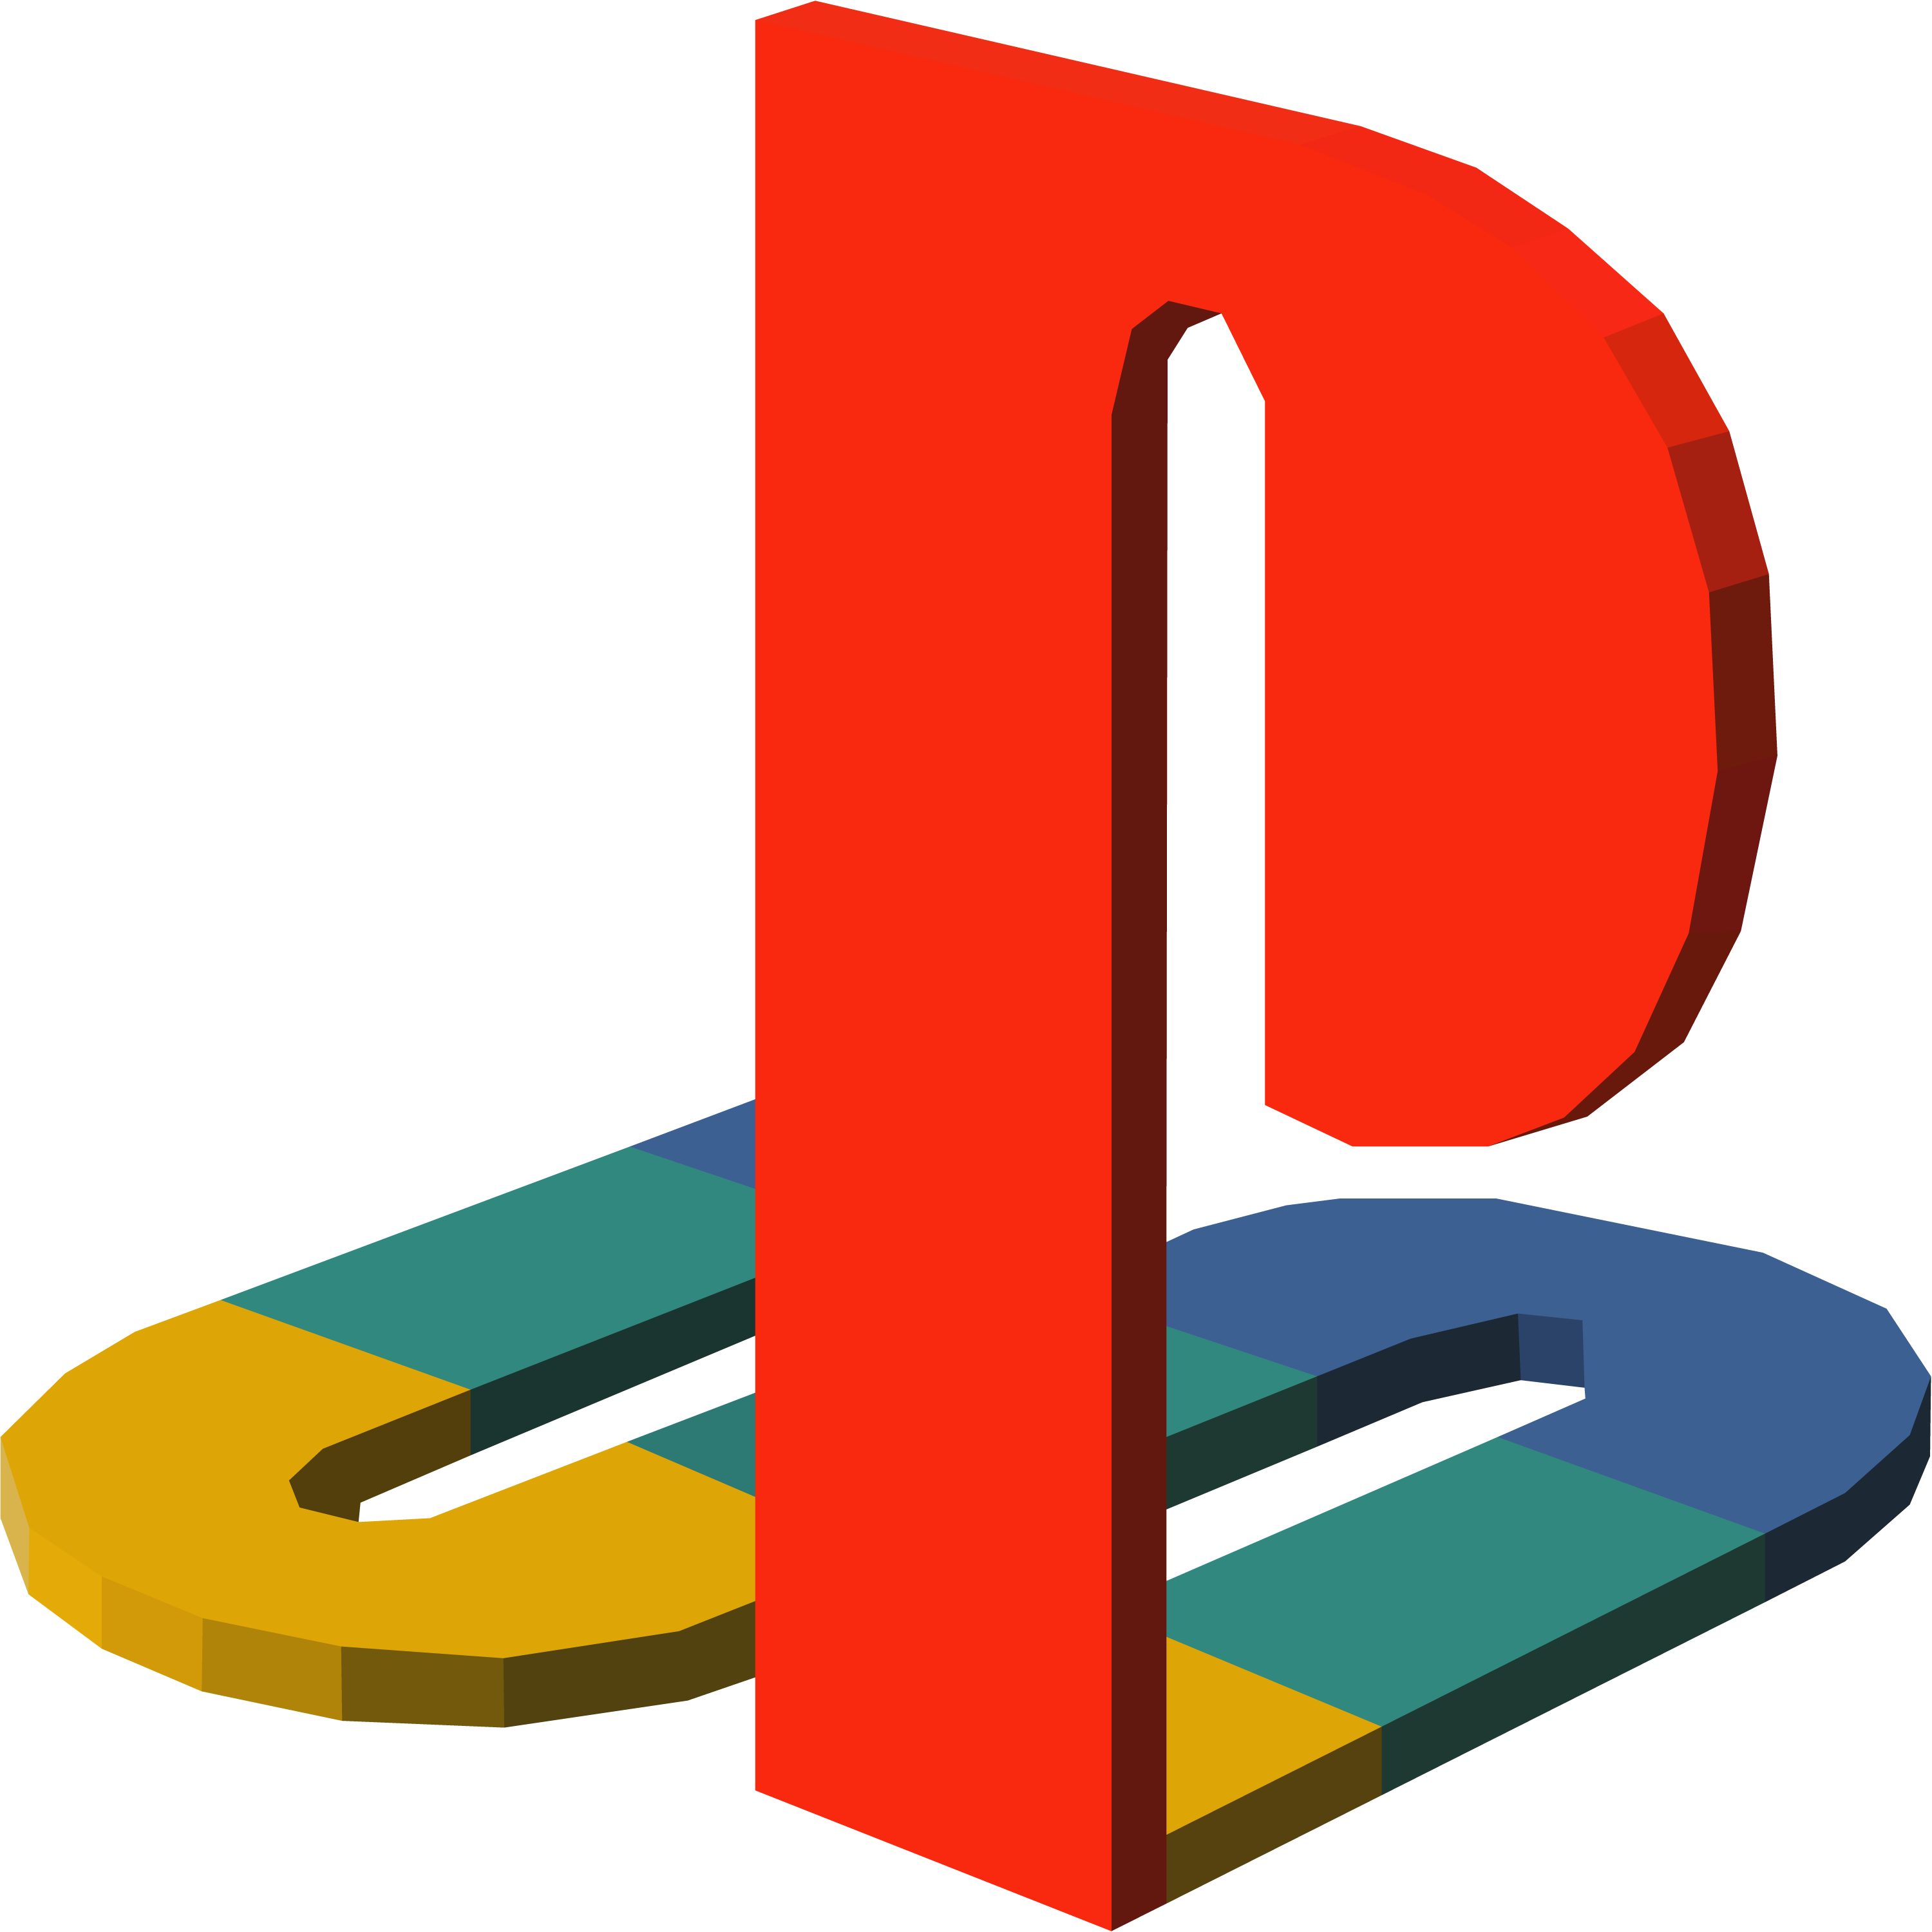 Acabo de enterarme de que el logo de PlayStation es un P de pie y una S